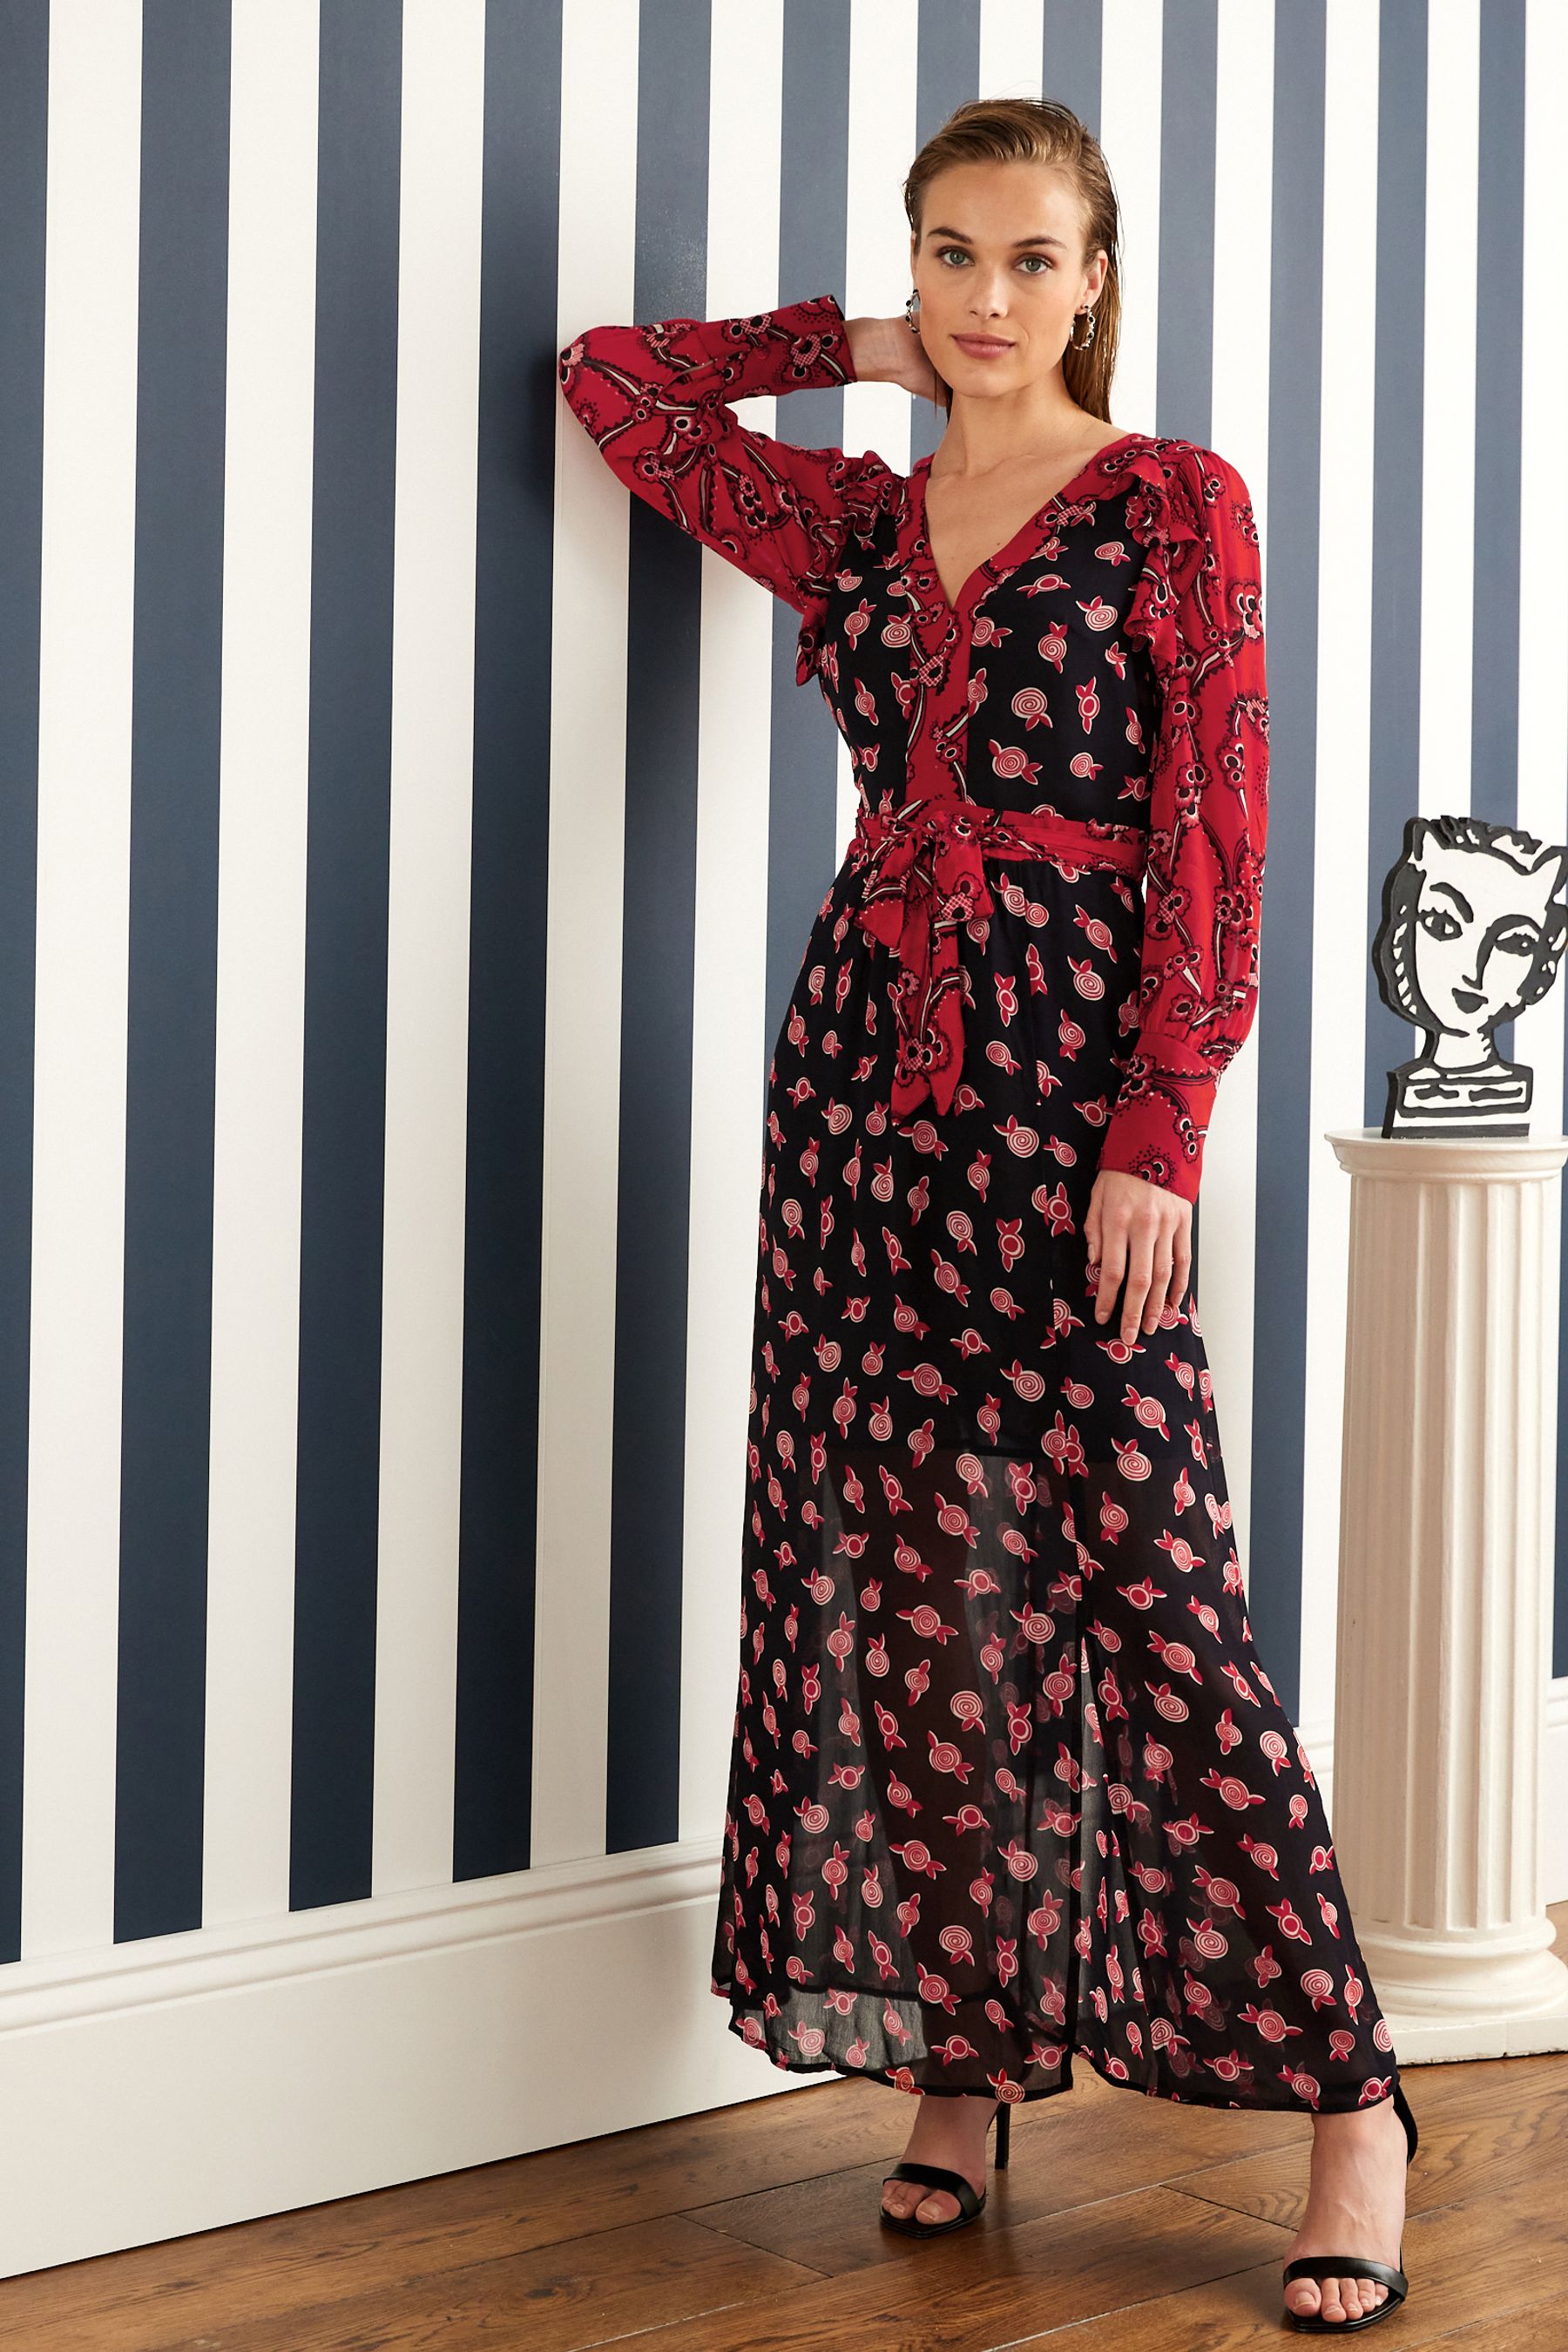 Buy Celia Birtwell Midi Dress from Next Ireland